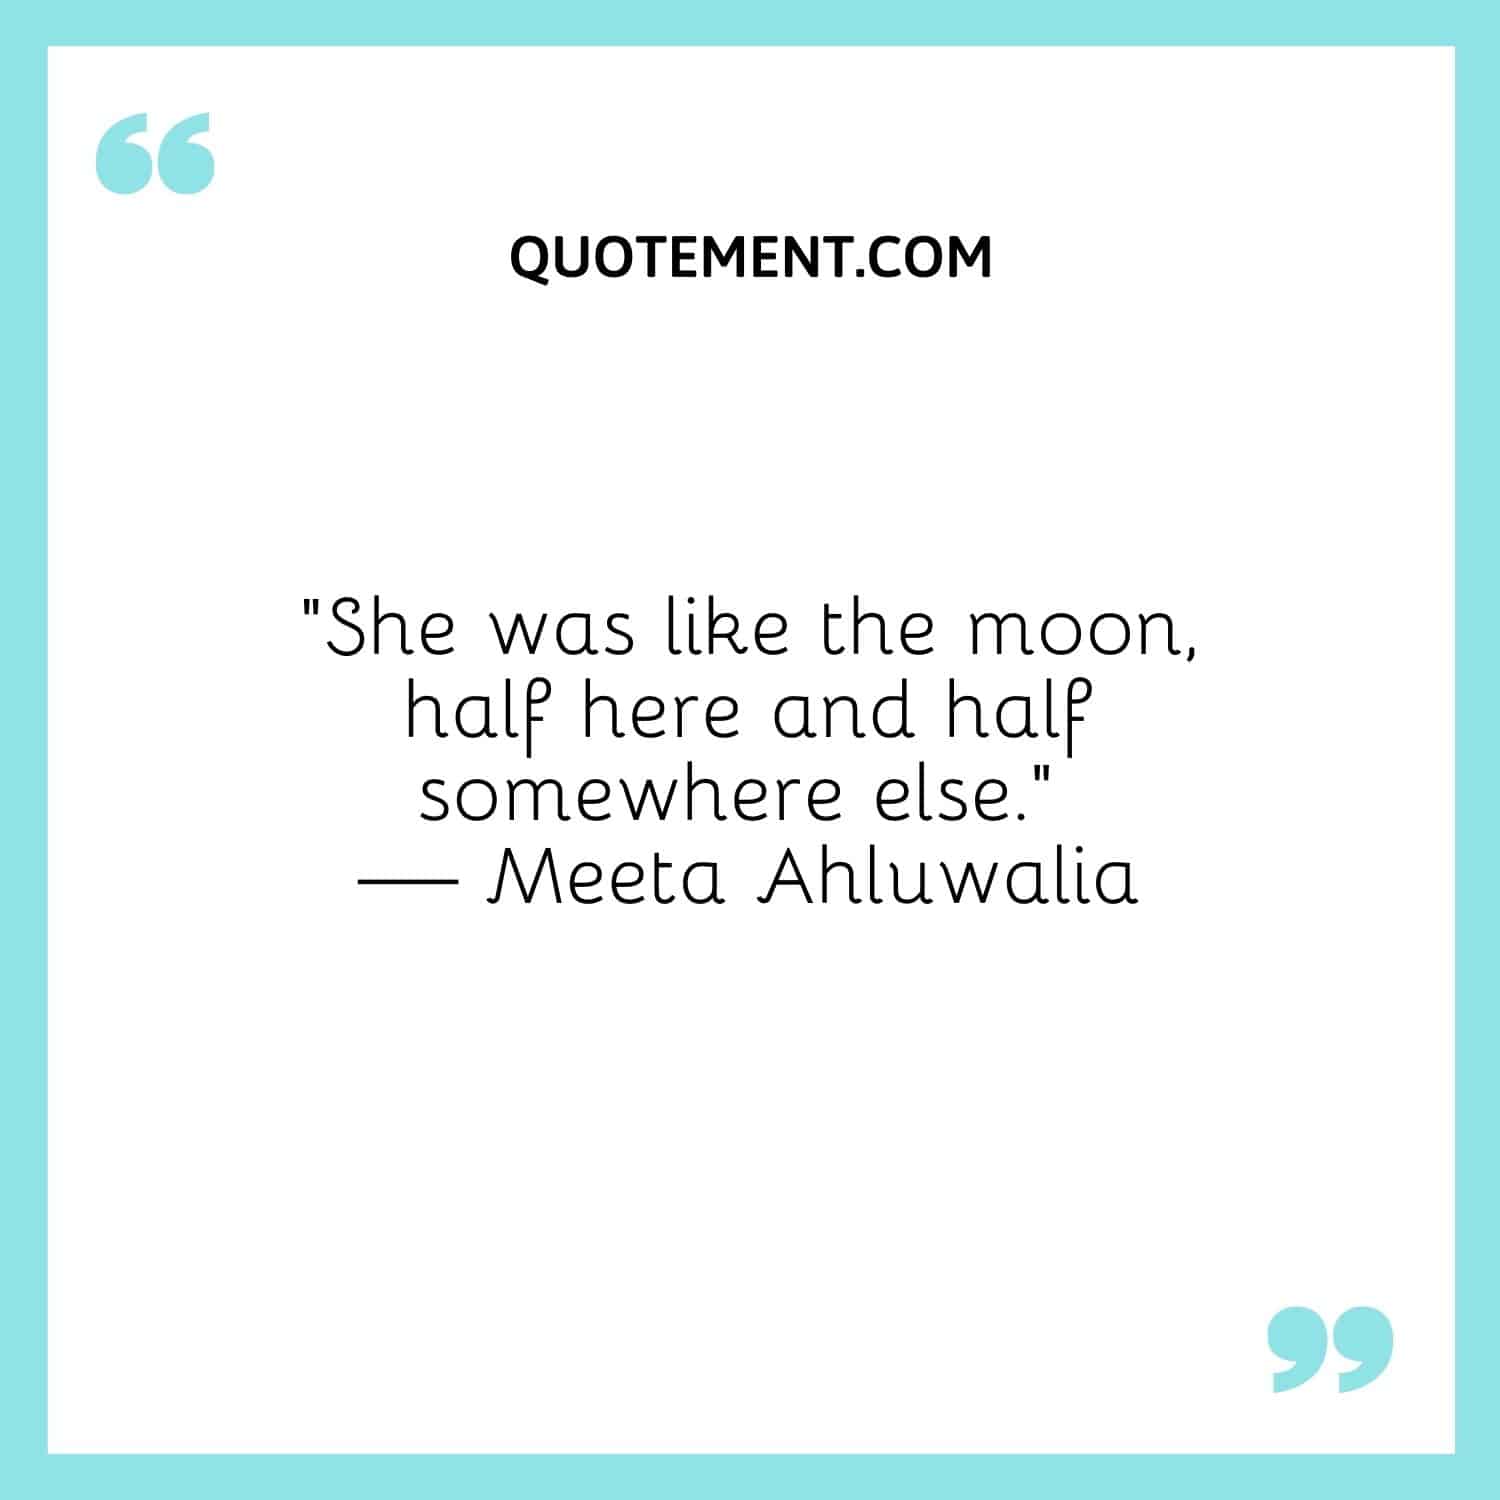 “She was like the moon, half here and half somewhere else.” — Meeta Ahluwalia